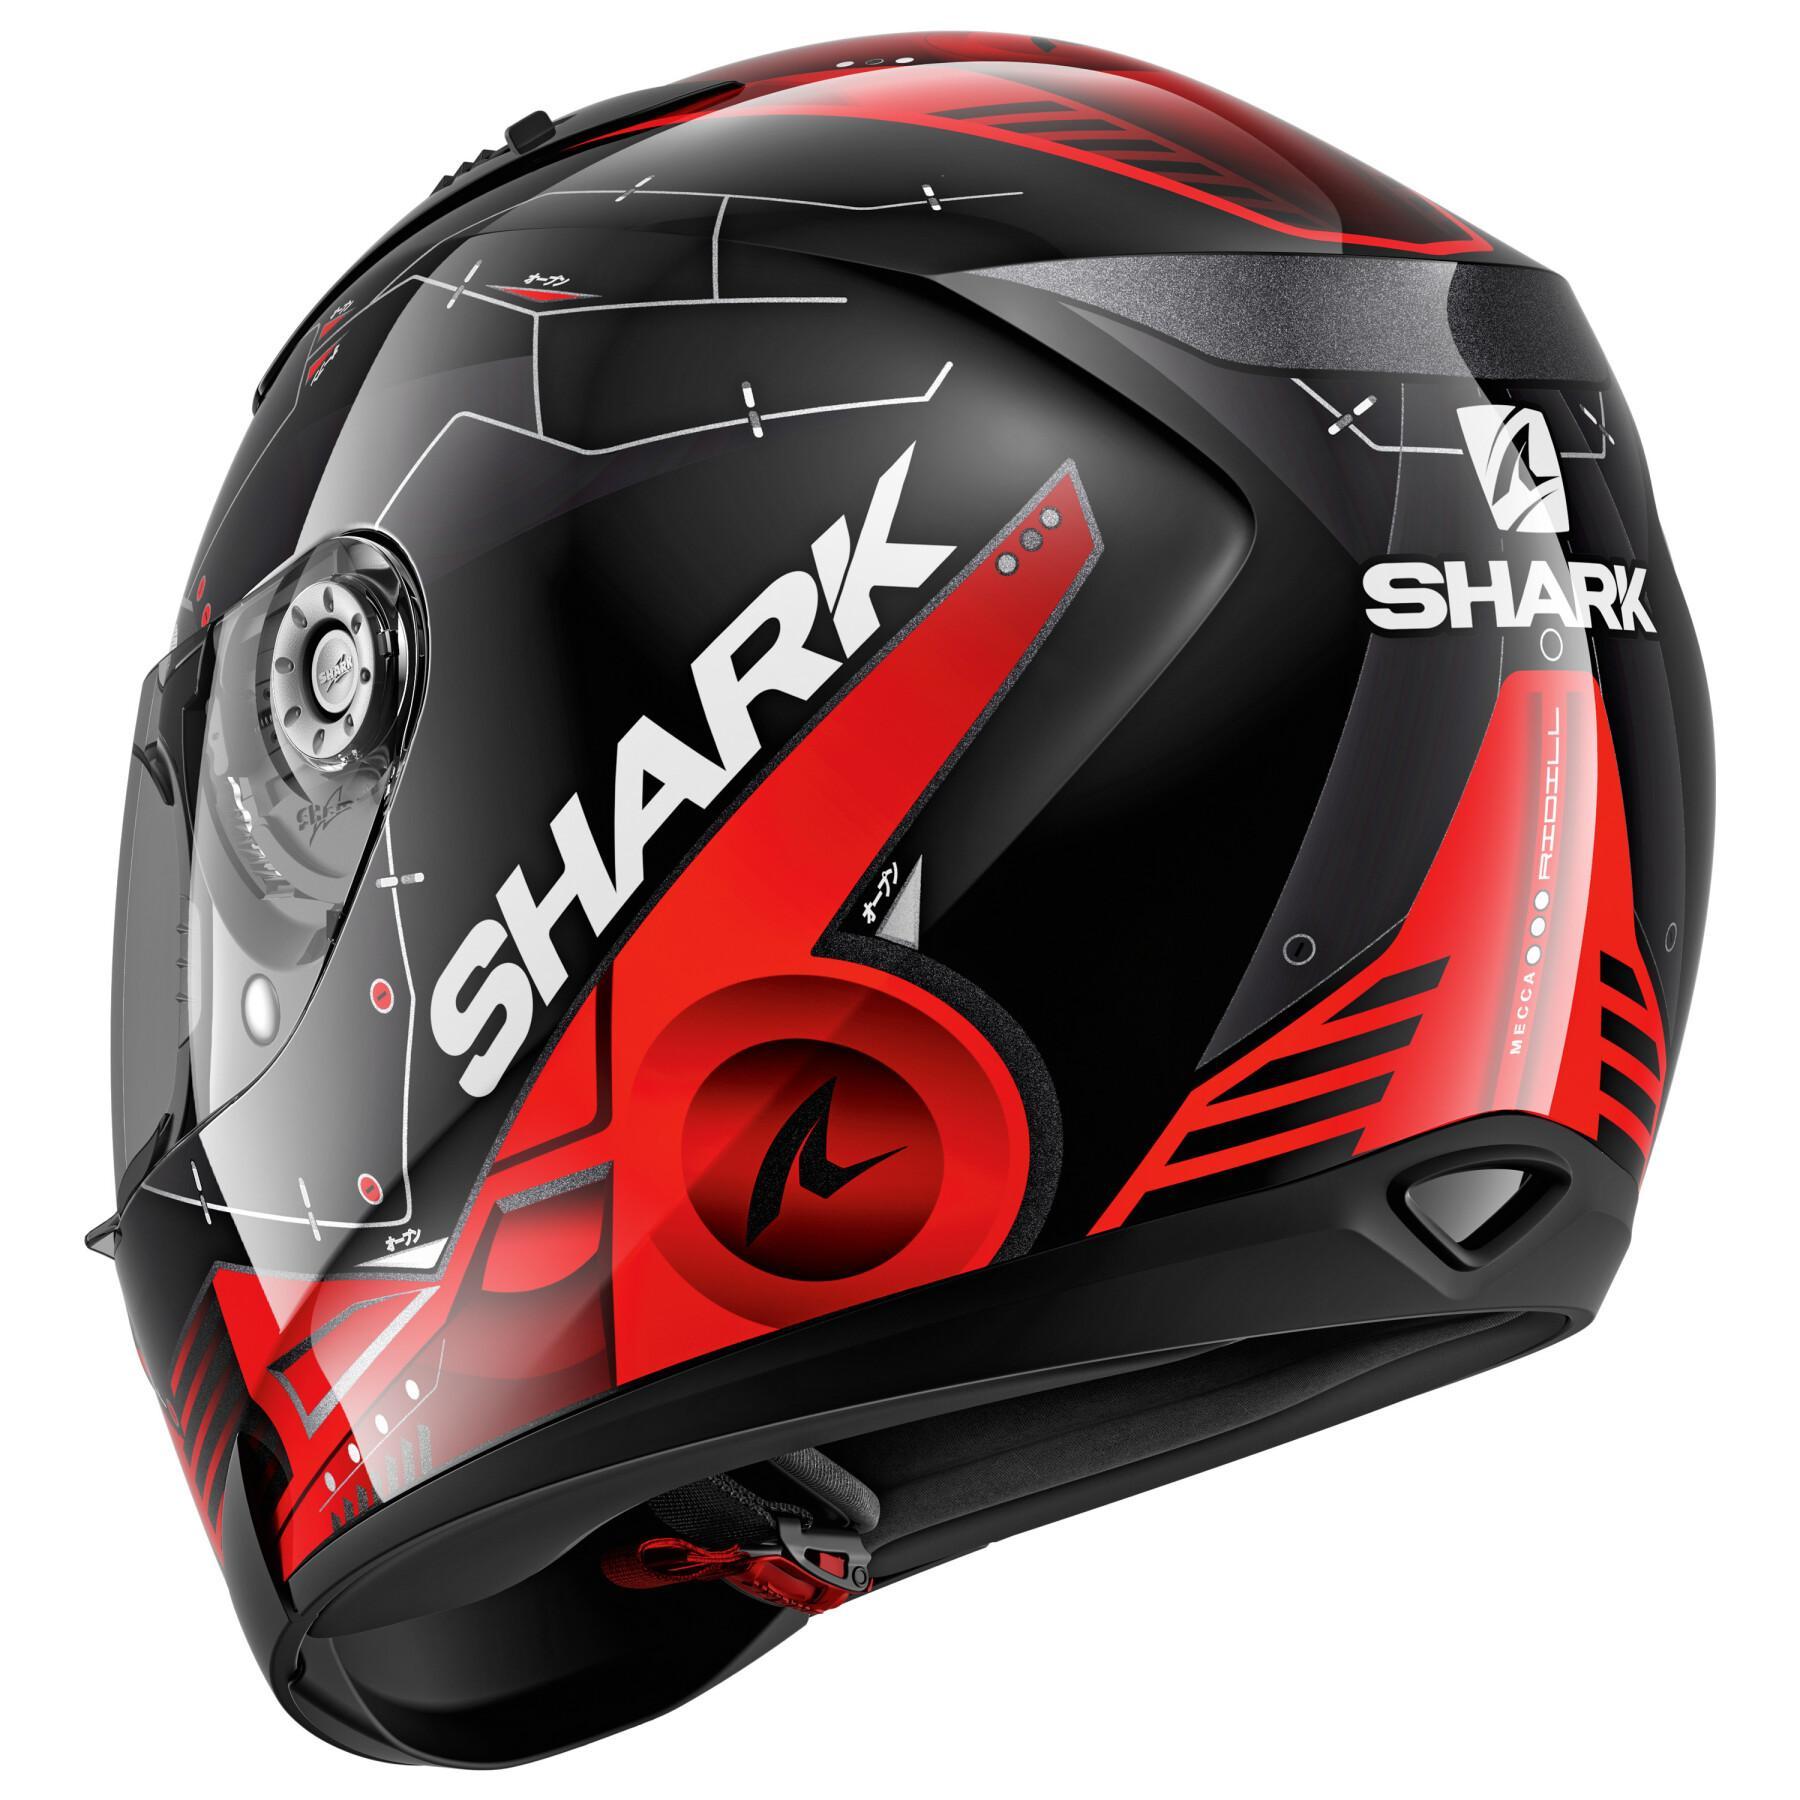 Full face motorcycle helmet Shark ridill 1.2 mecca